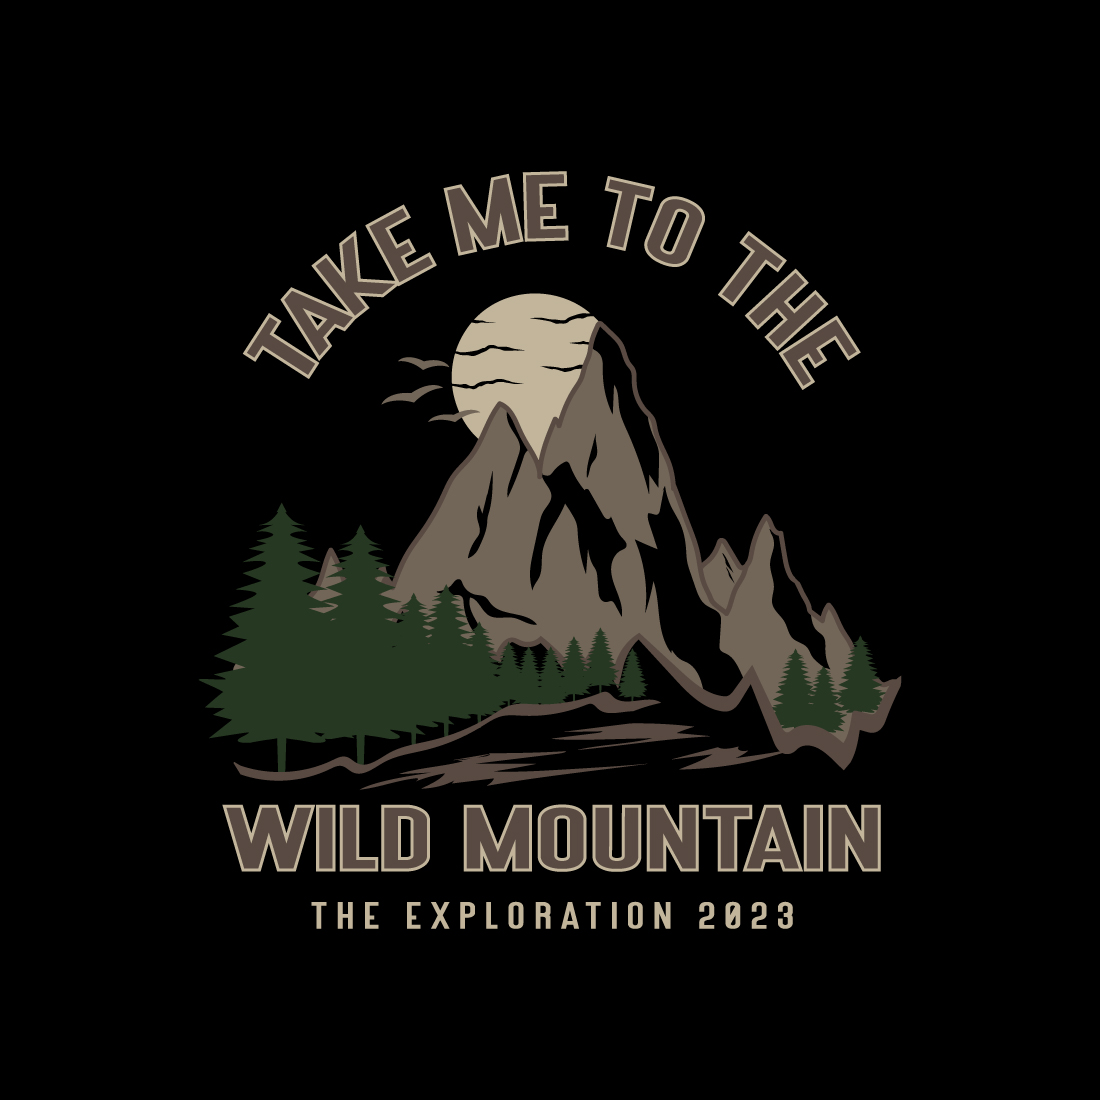 mountain t-shirt design - Take me to the wild mountain preview image.